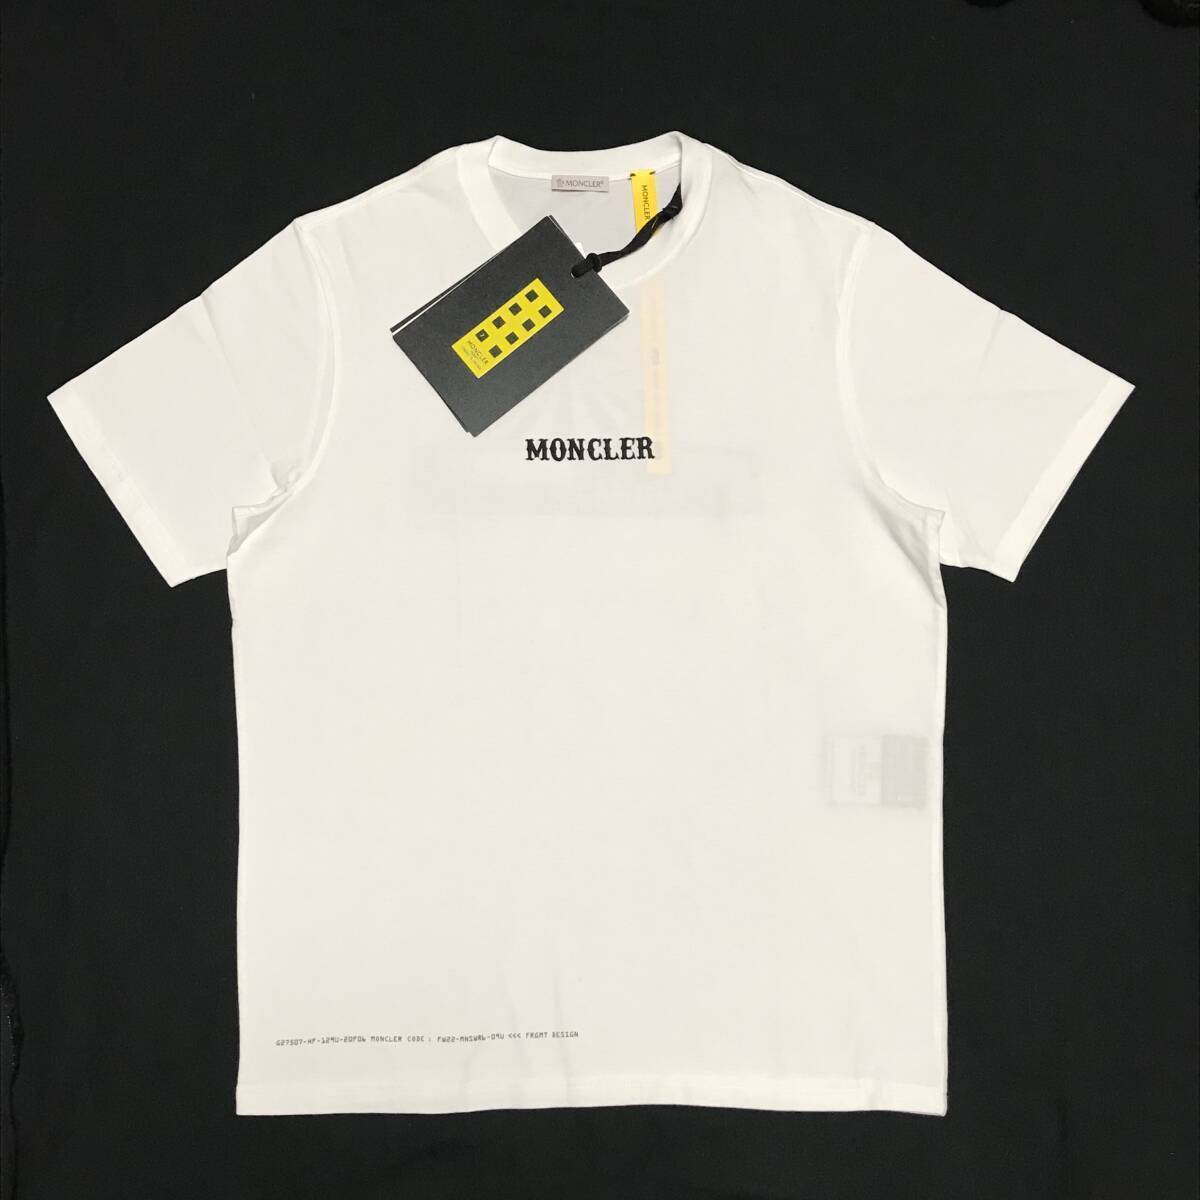 MONCLER FRAGMENT サーカス Tシャツ 白 XL 新品 定価52800円 モンクレール ジーニアス FRGMT CIRCUS ロゴ HFの画像4